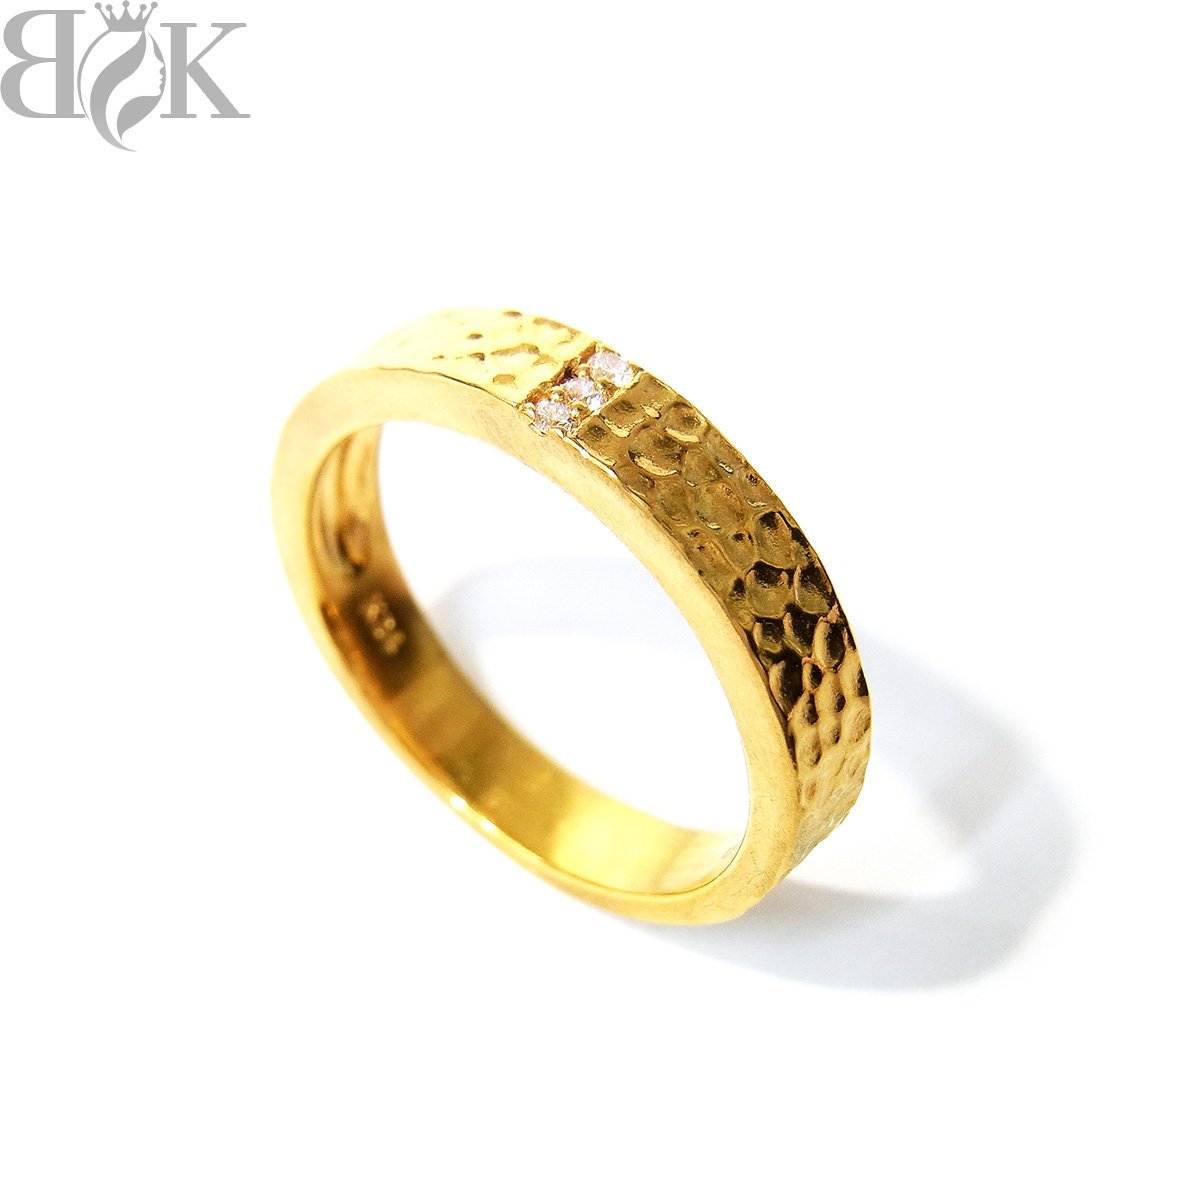 美品 K24 デザインリング 指輪 ダイヤ イエローゴールド 約15号 0.03ct 総重量約6.9g 超音波洗浄済み 〓